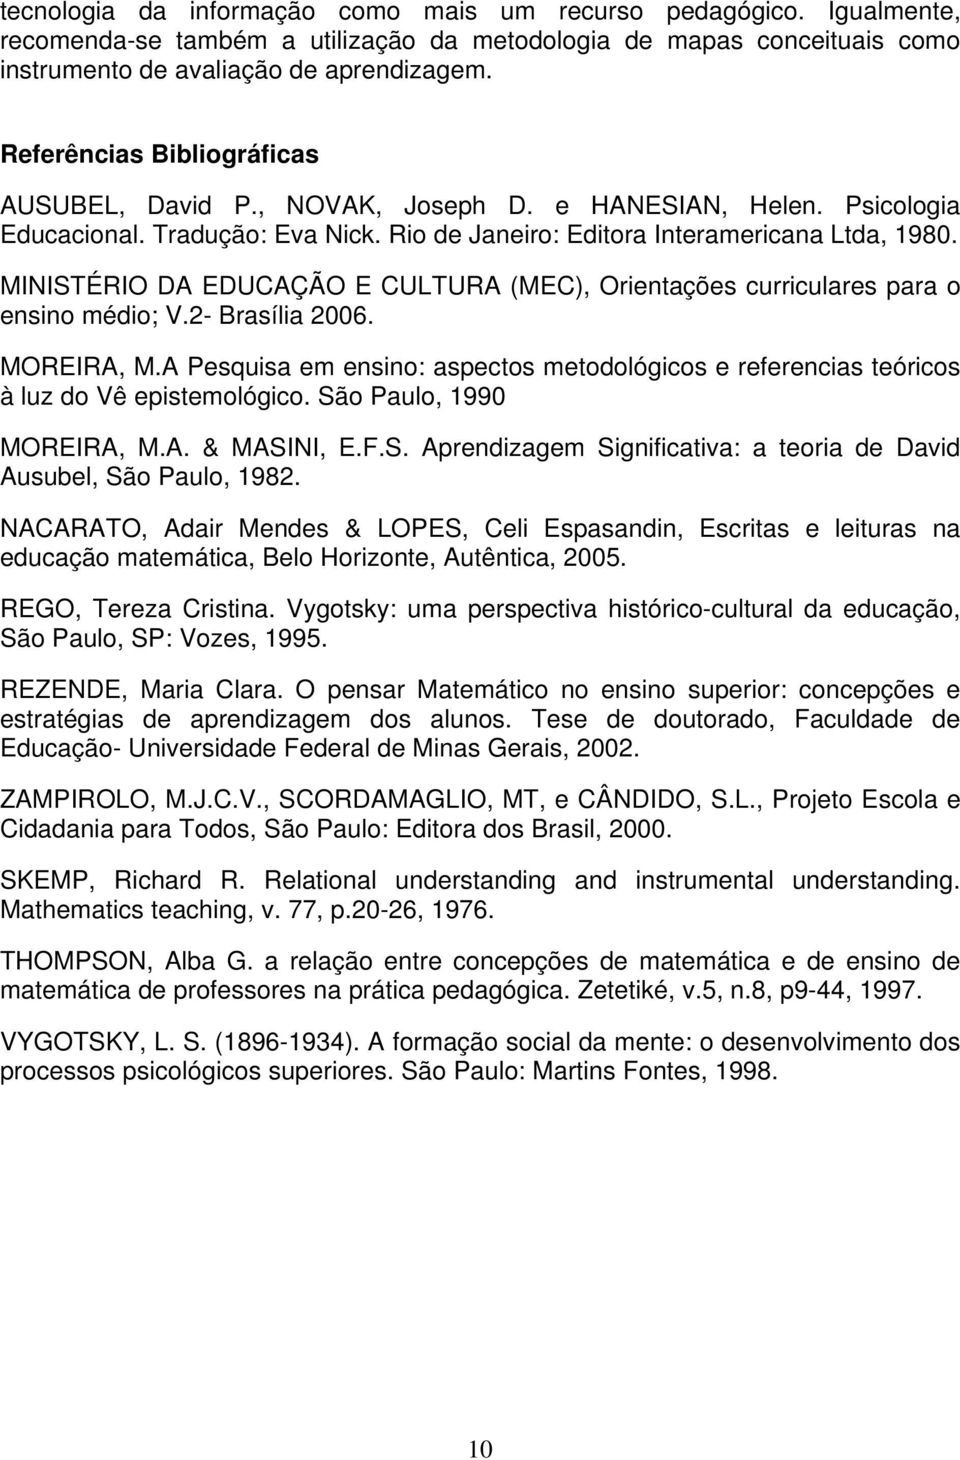 MINISTÉRIO DA EDUCAÇÃO E CULTURA (MEC), Orientações curriculares para o ensino médio; V.2- Brasília 2006. MOREIRA, M.